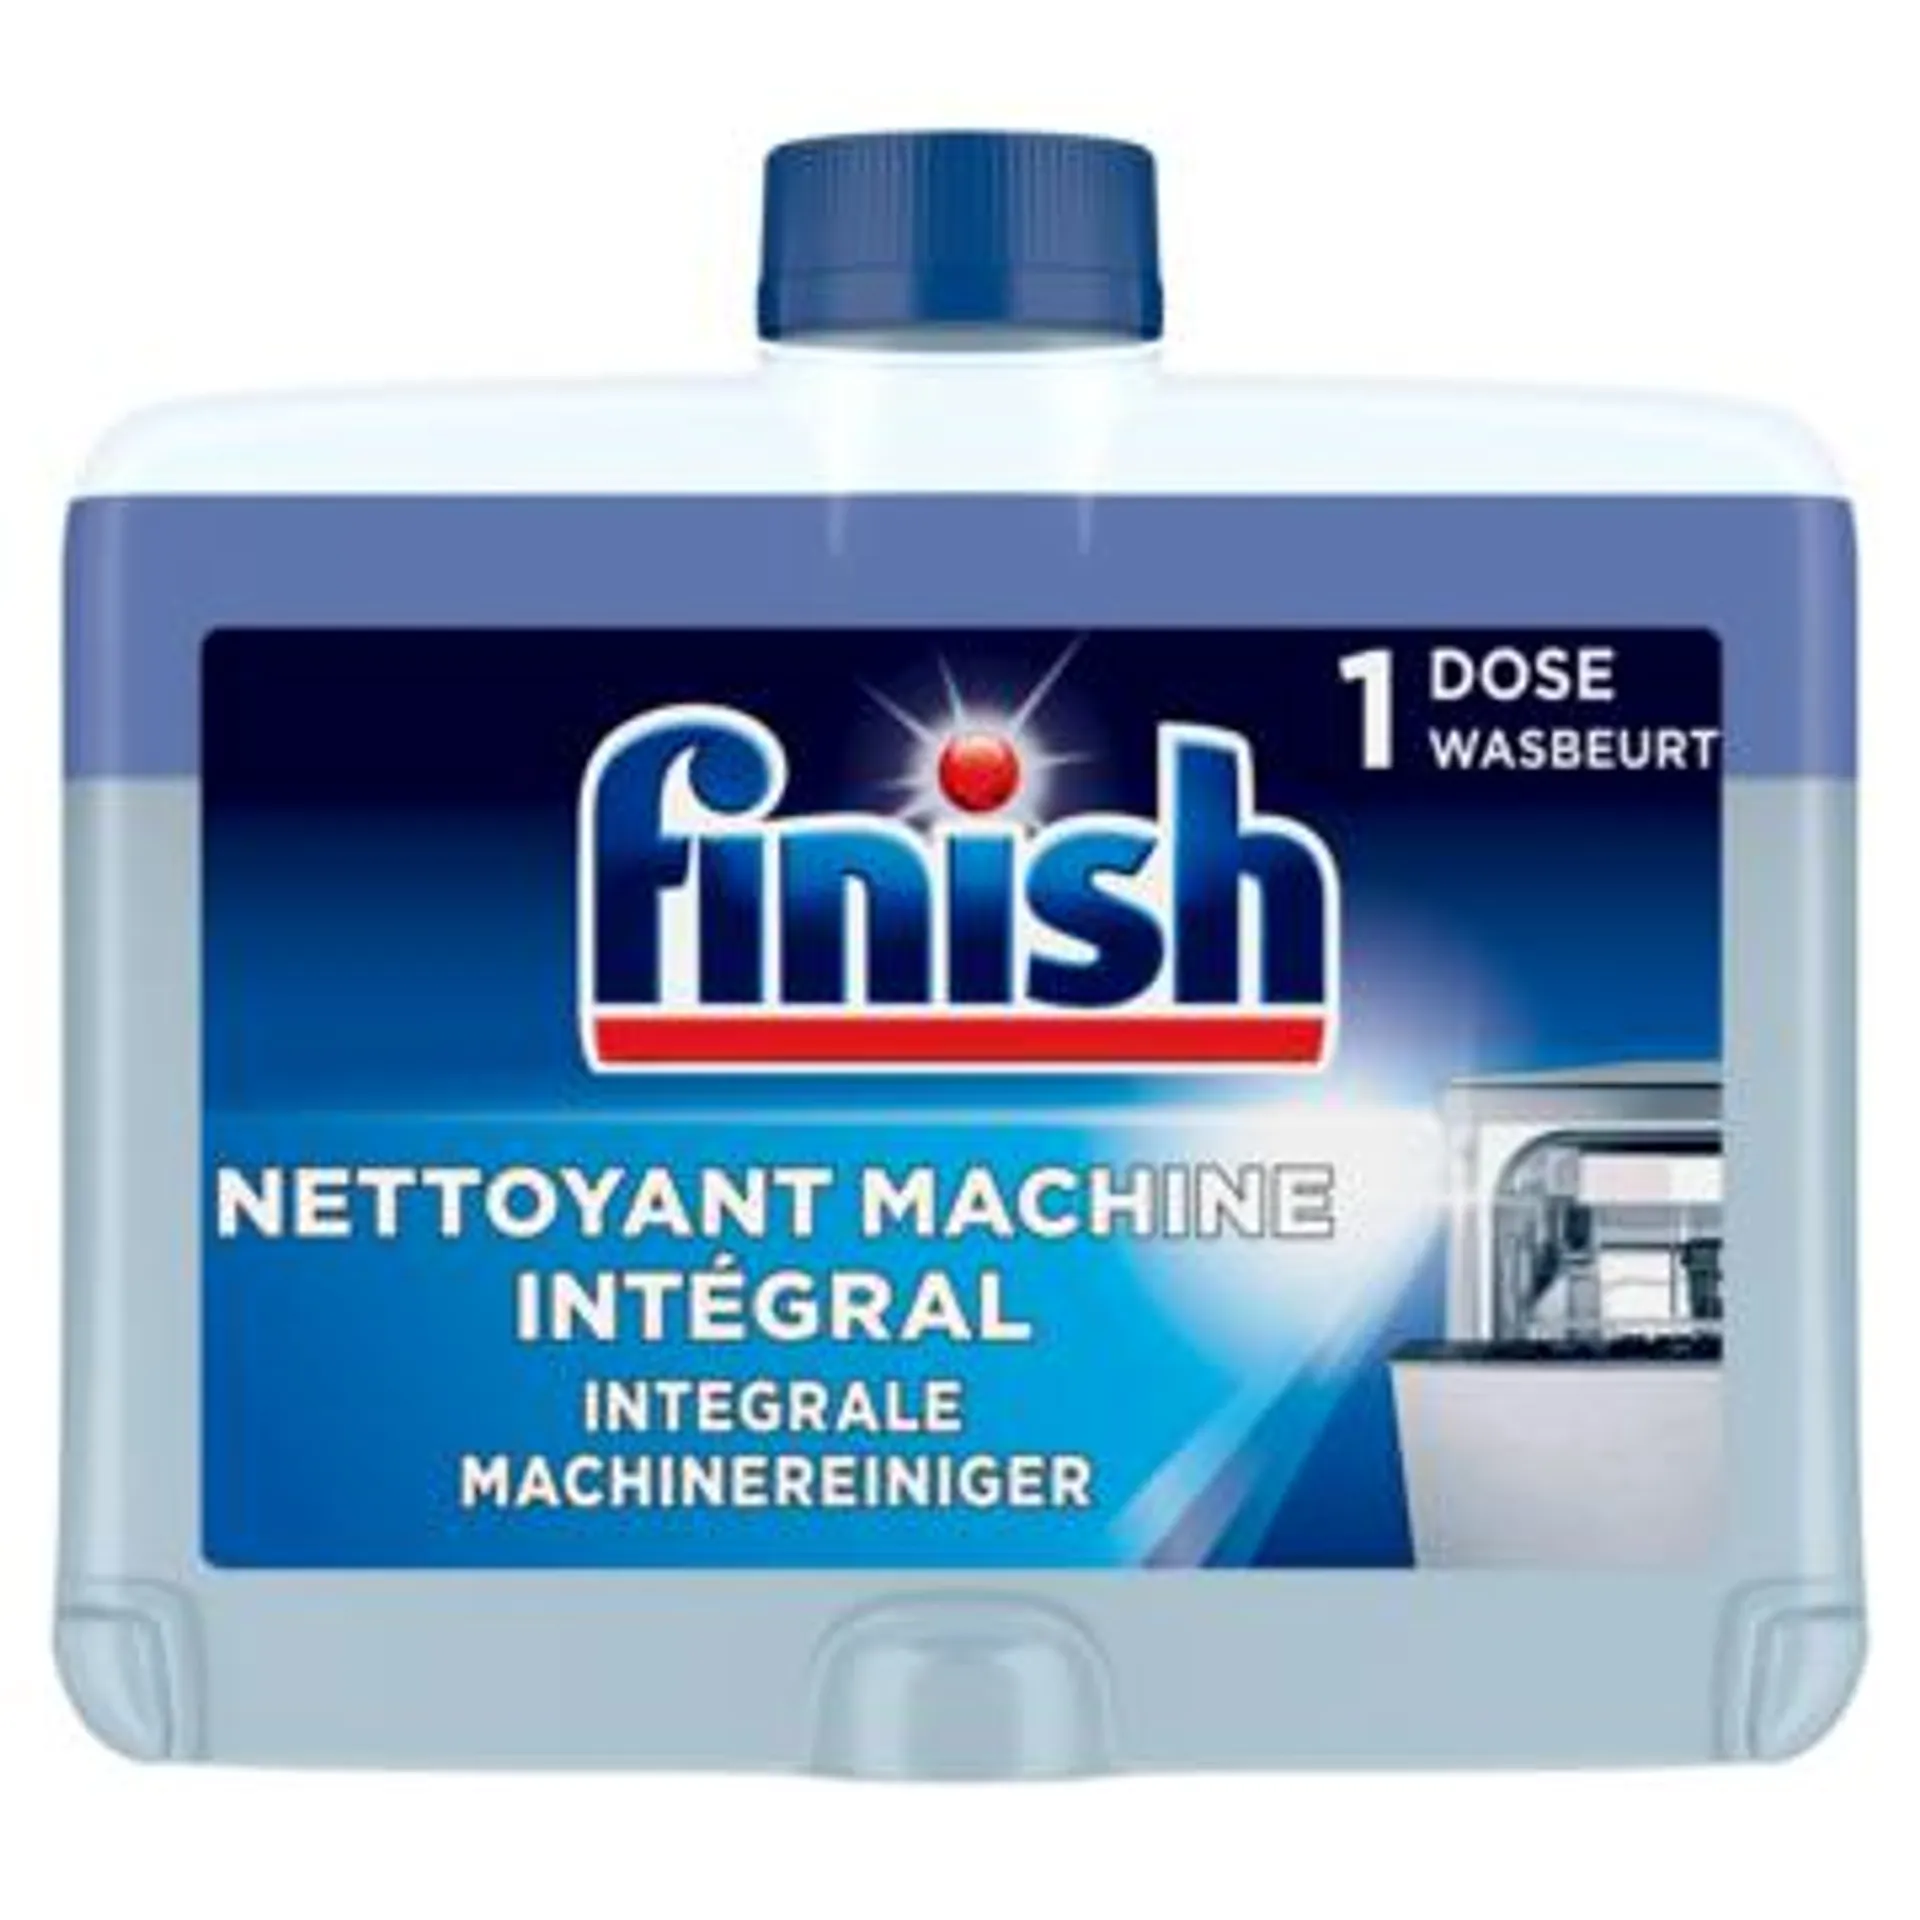 Finish Integrale Machinereiniger Regular - Vaatwasser - 250ml